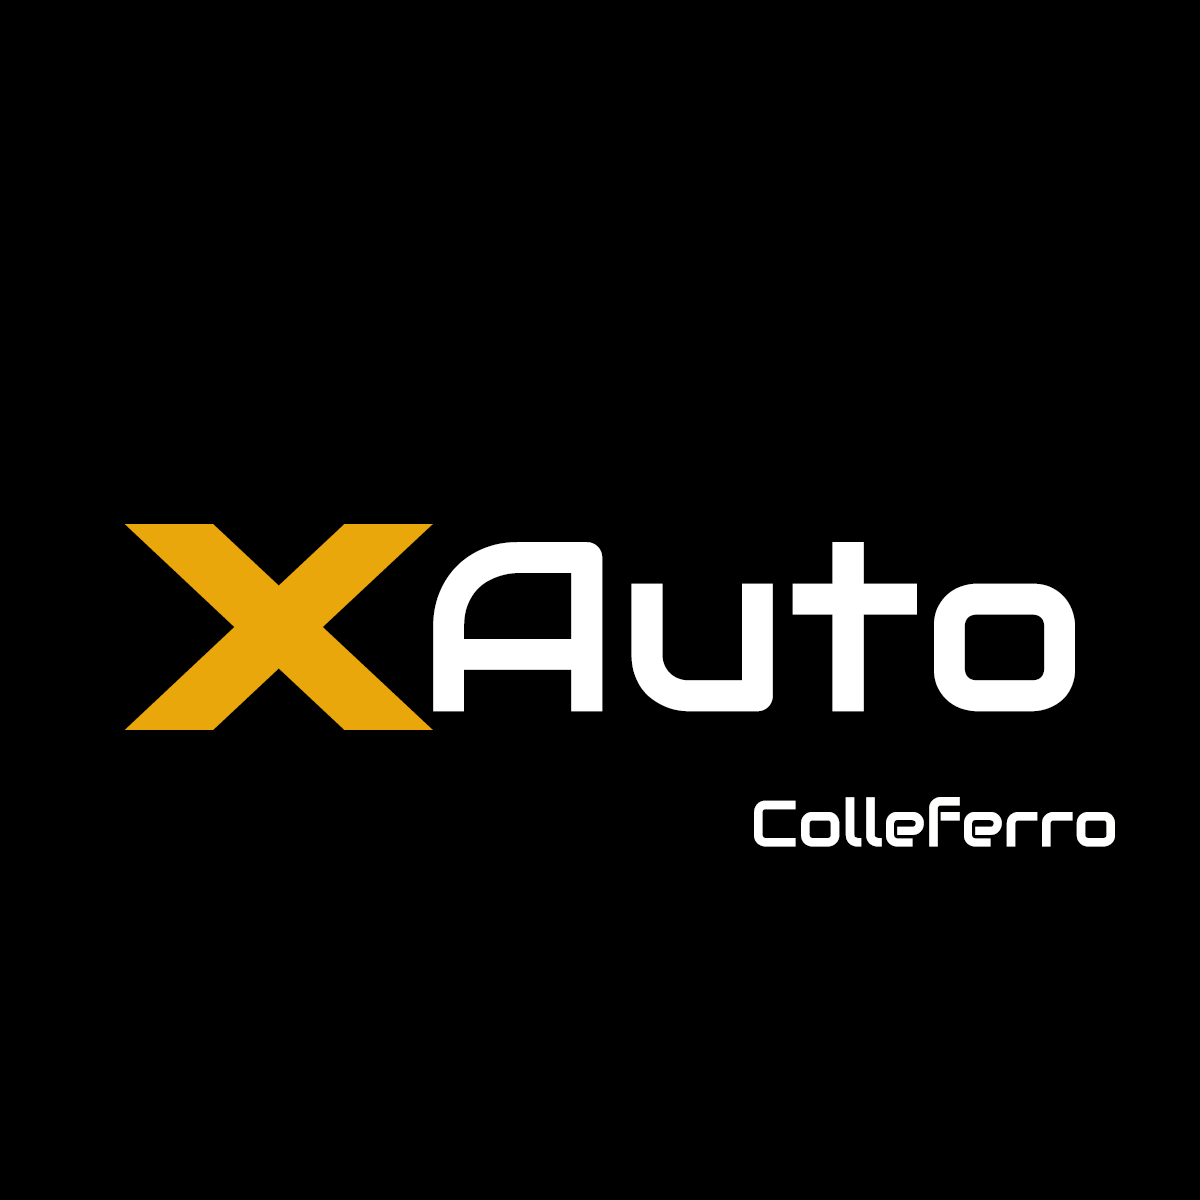 Logo Xauto Colleferro